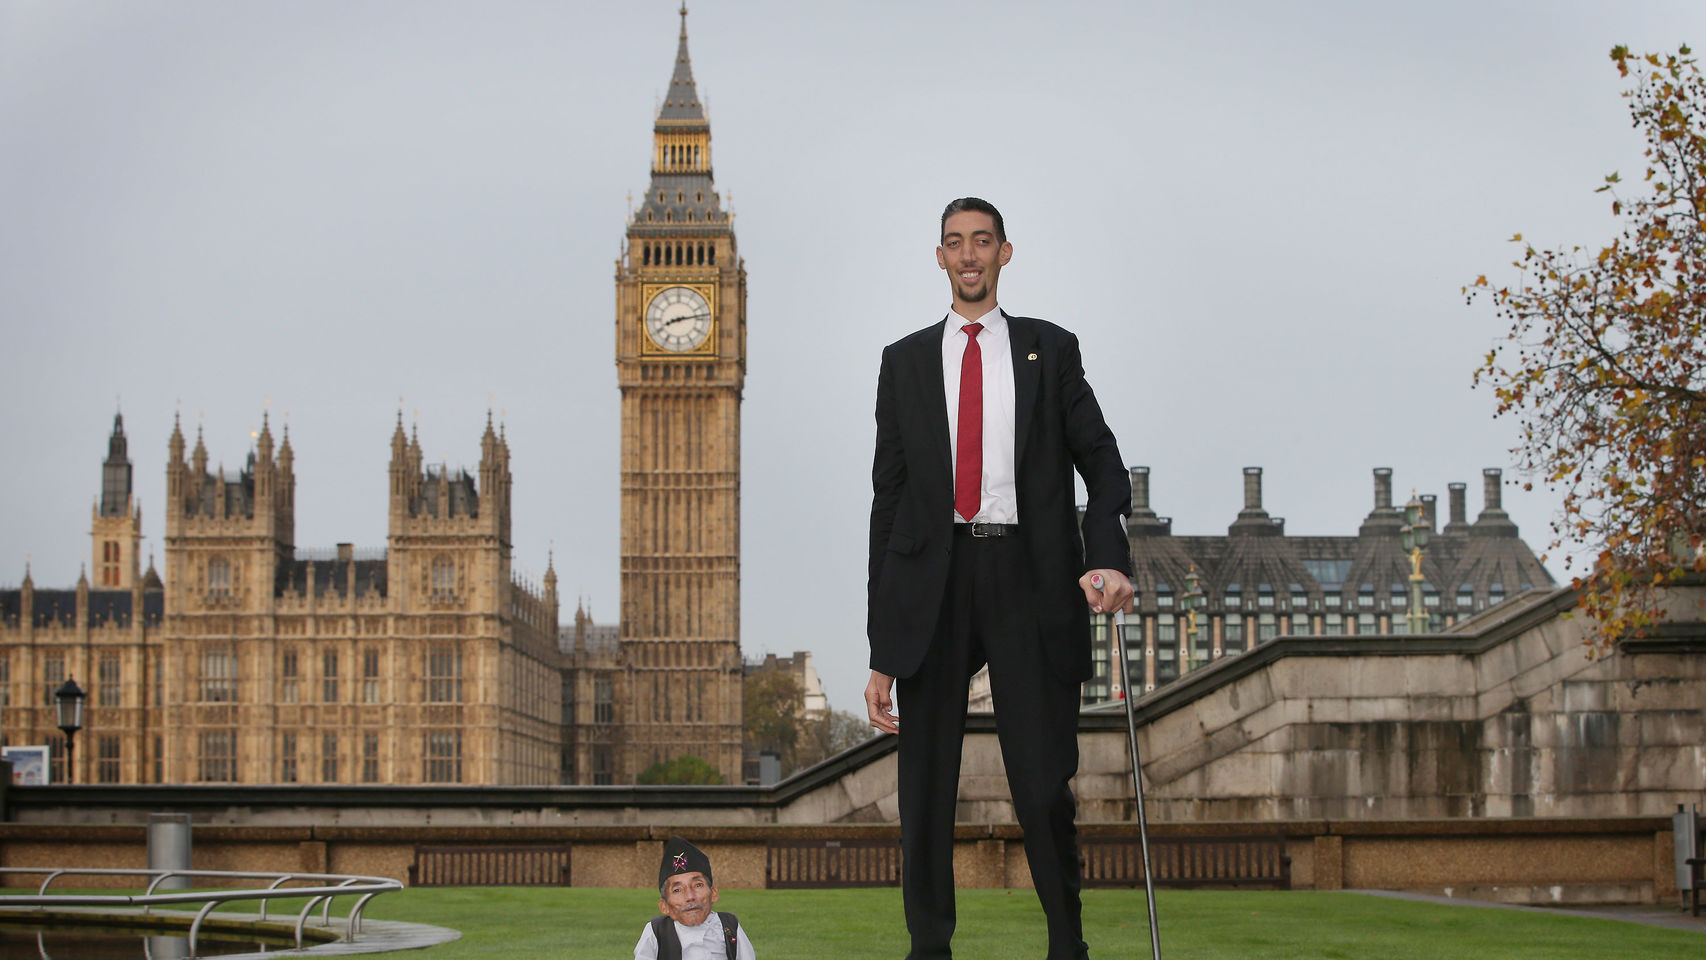 El hombre más alto del mundo y el más bajo.